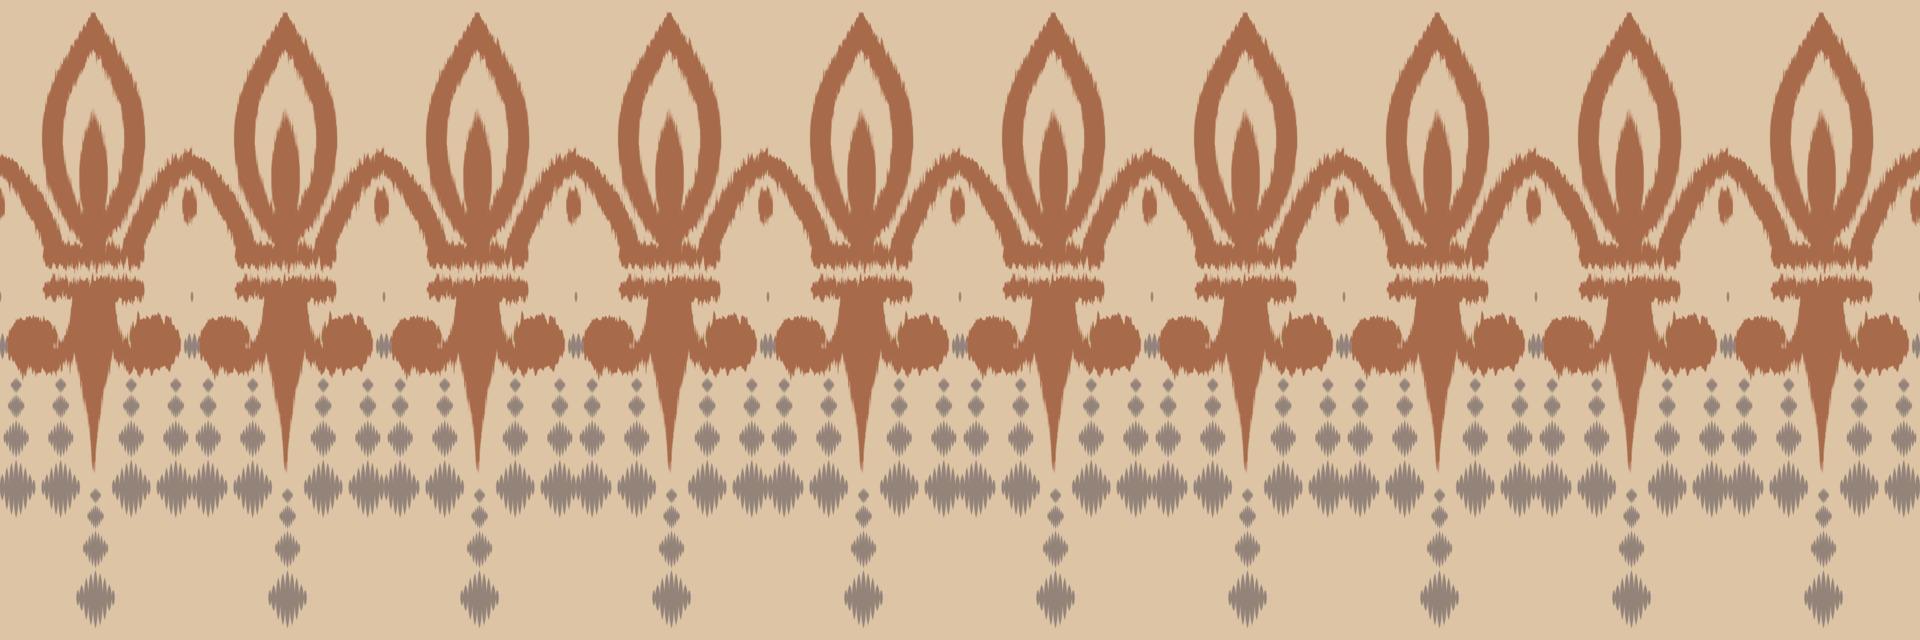 tissu ikat motif abstrait sans couture tribal. ethnique géométrique batik ikkat numérique vecteur conception textile pour impressions tissu sari mughal brosse symbole andains texture kurti kurtis kurtas